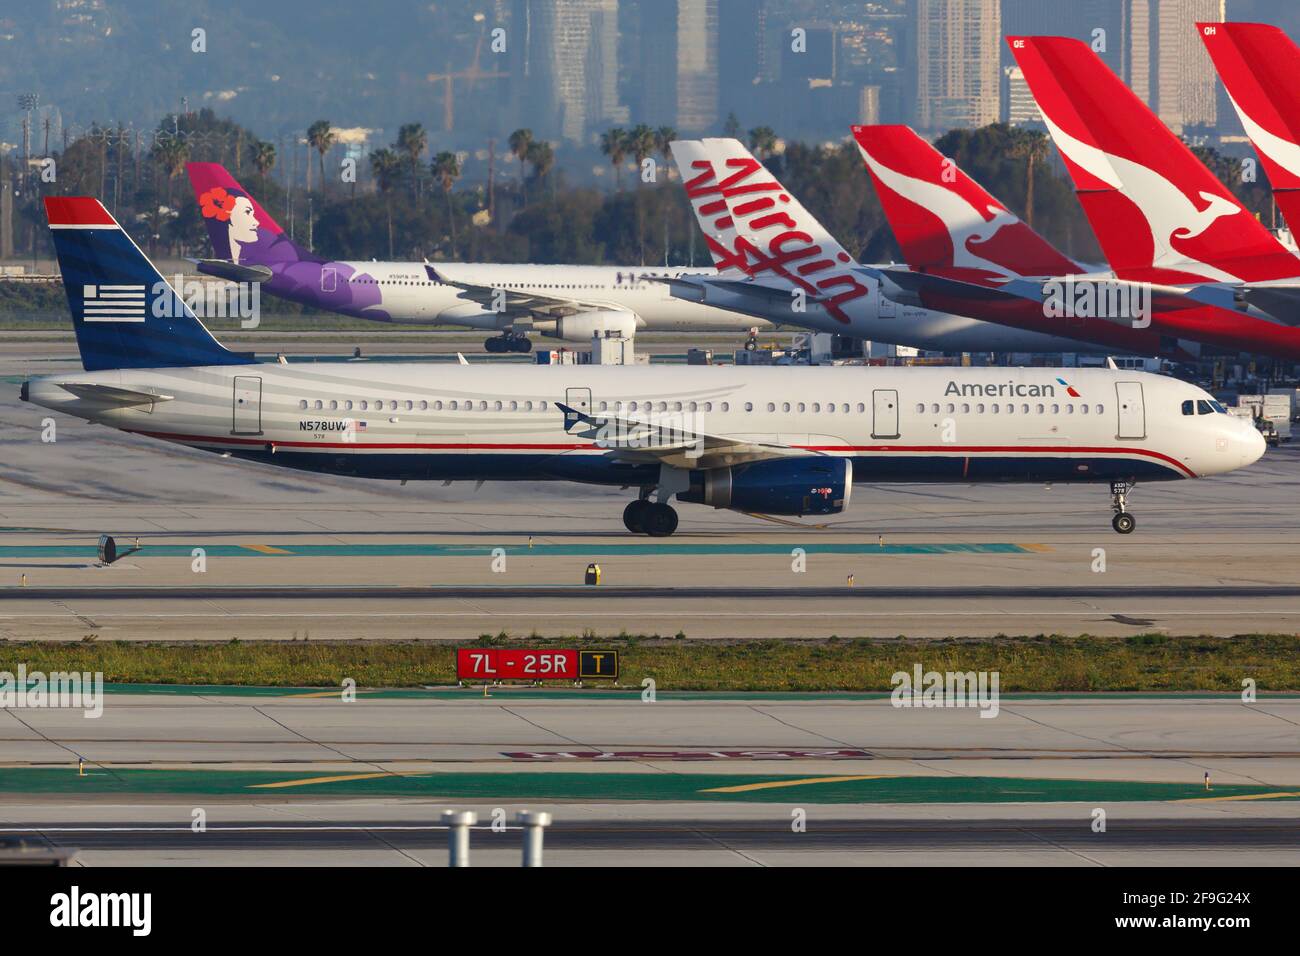 Los Angeles, USA - 20. Februar 2016: US Airways Airbus A321 am Flughafen Los Angeles (LAX) in den USA. Airbus ist ein Flugzeughersteller aus Toulouse Stockfoto